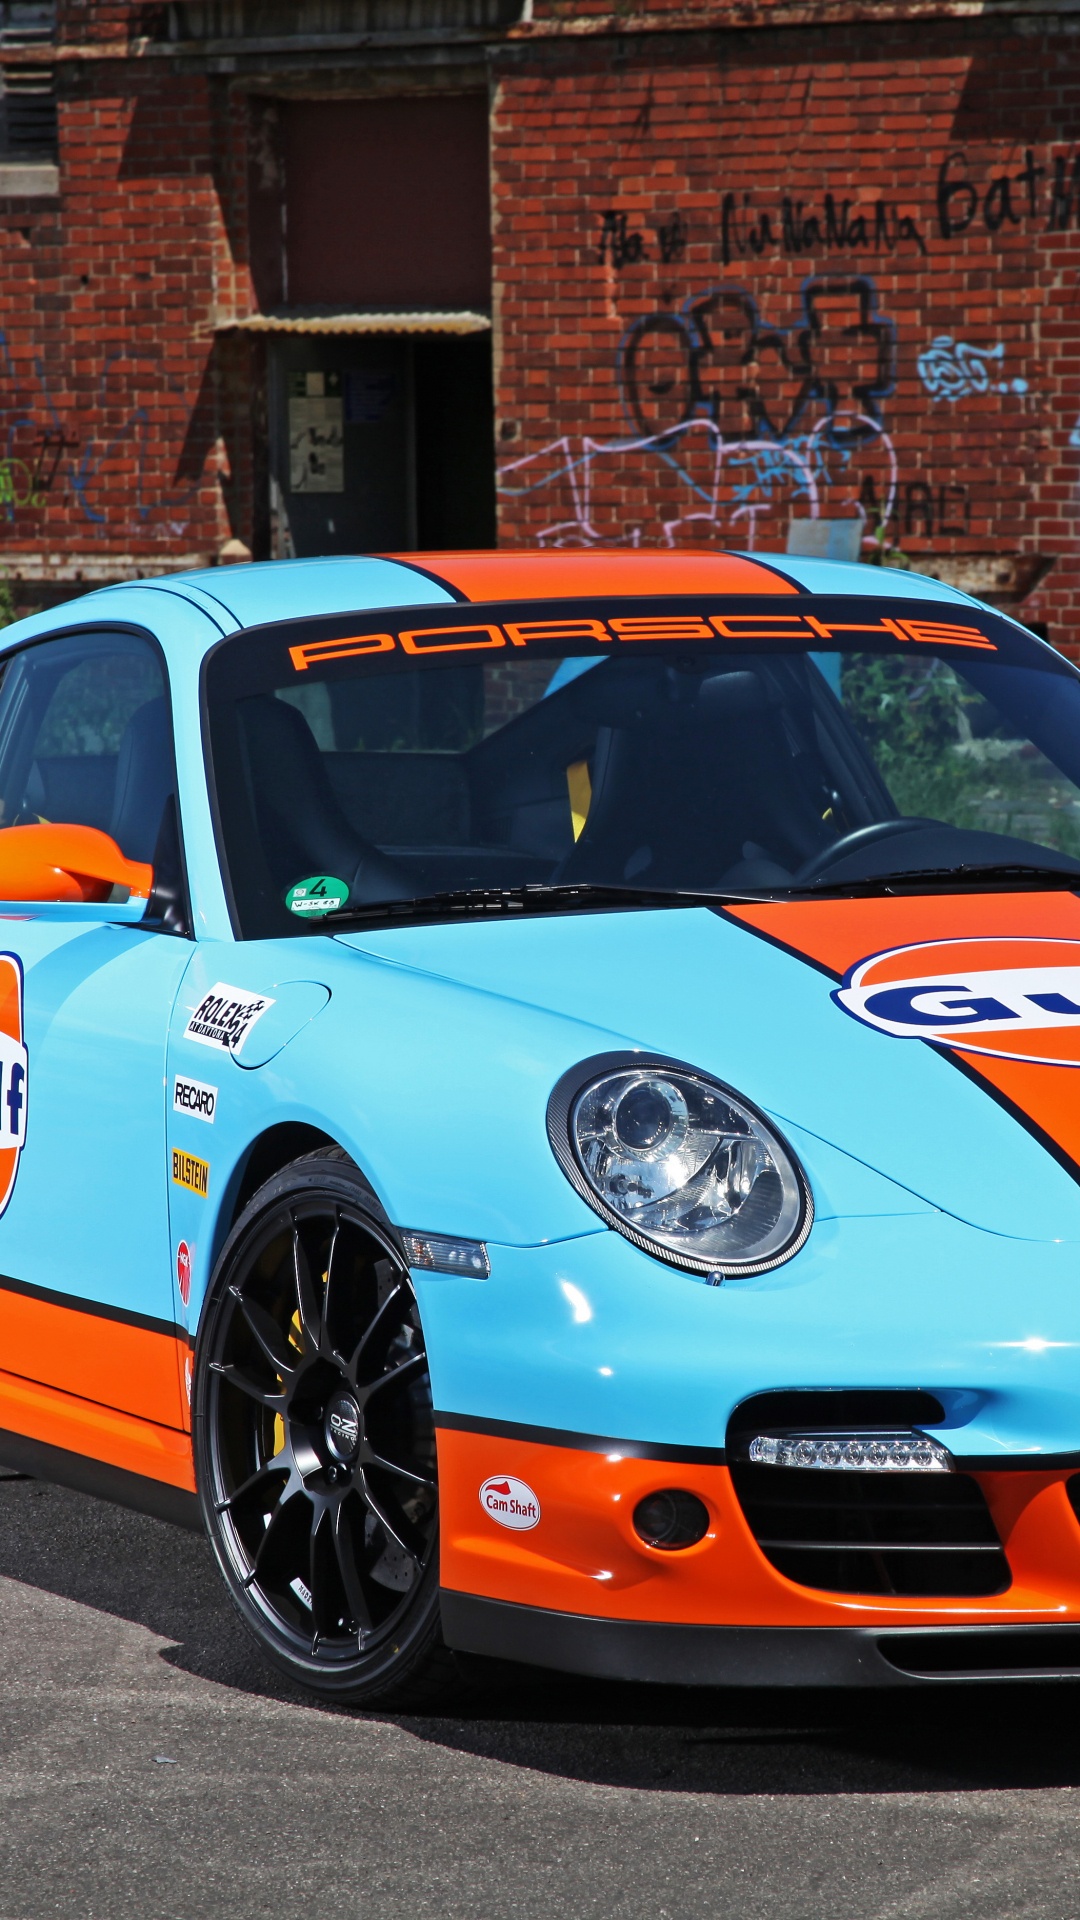 Porsche 911 Azul y Blanco Estacionado Cerca Del Edificio de Ladrillo Marrón Durante el Día. Wallpaper in 1080x1920 Resolution